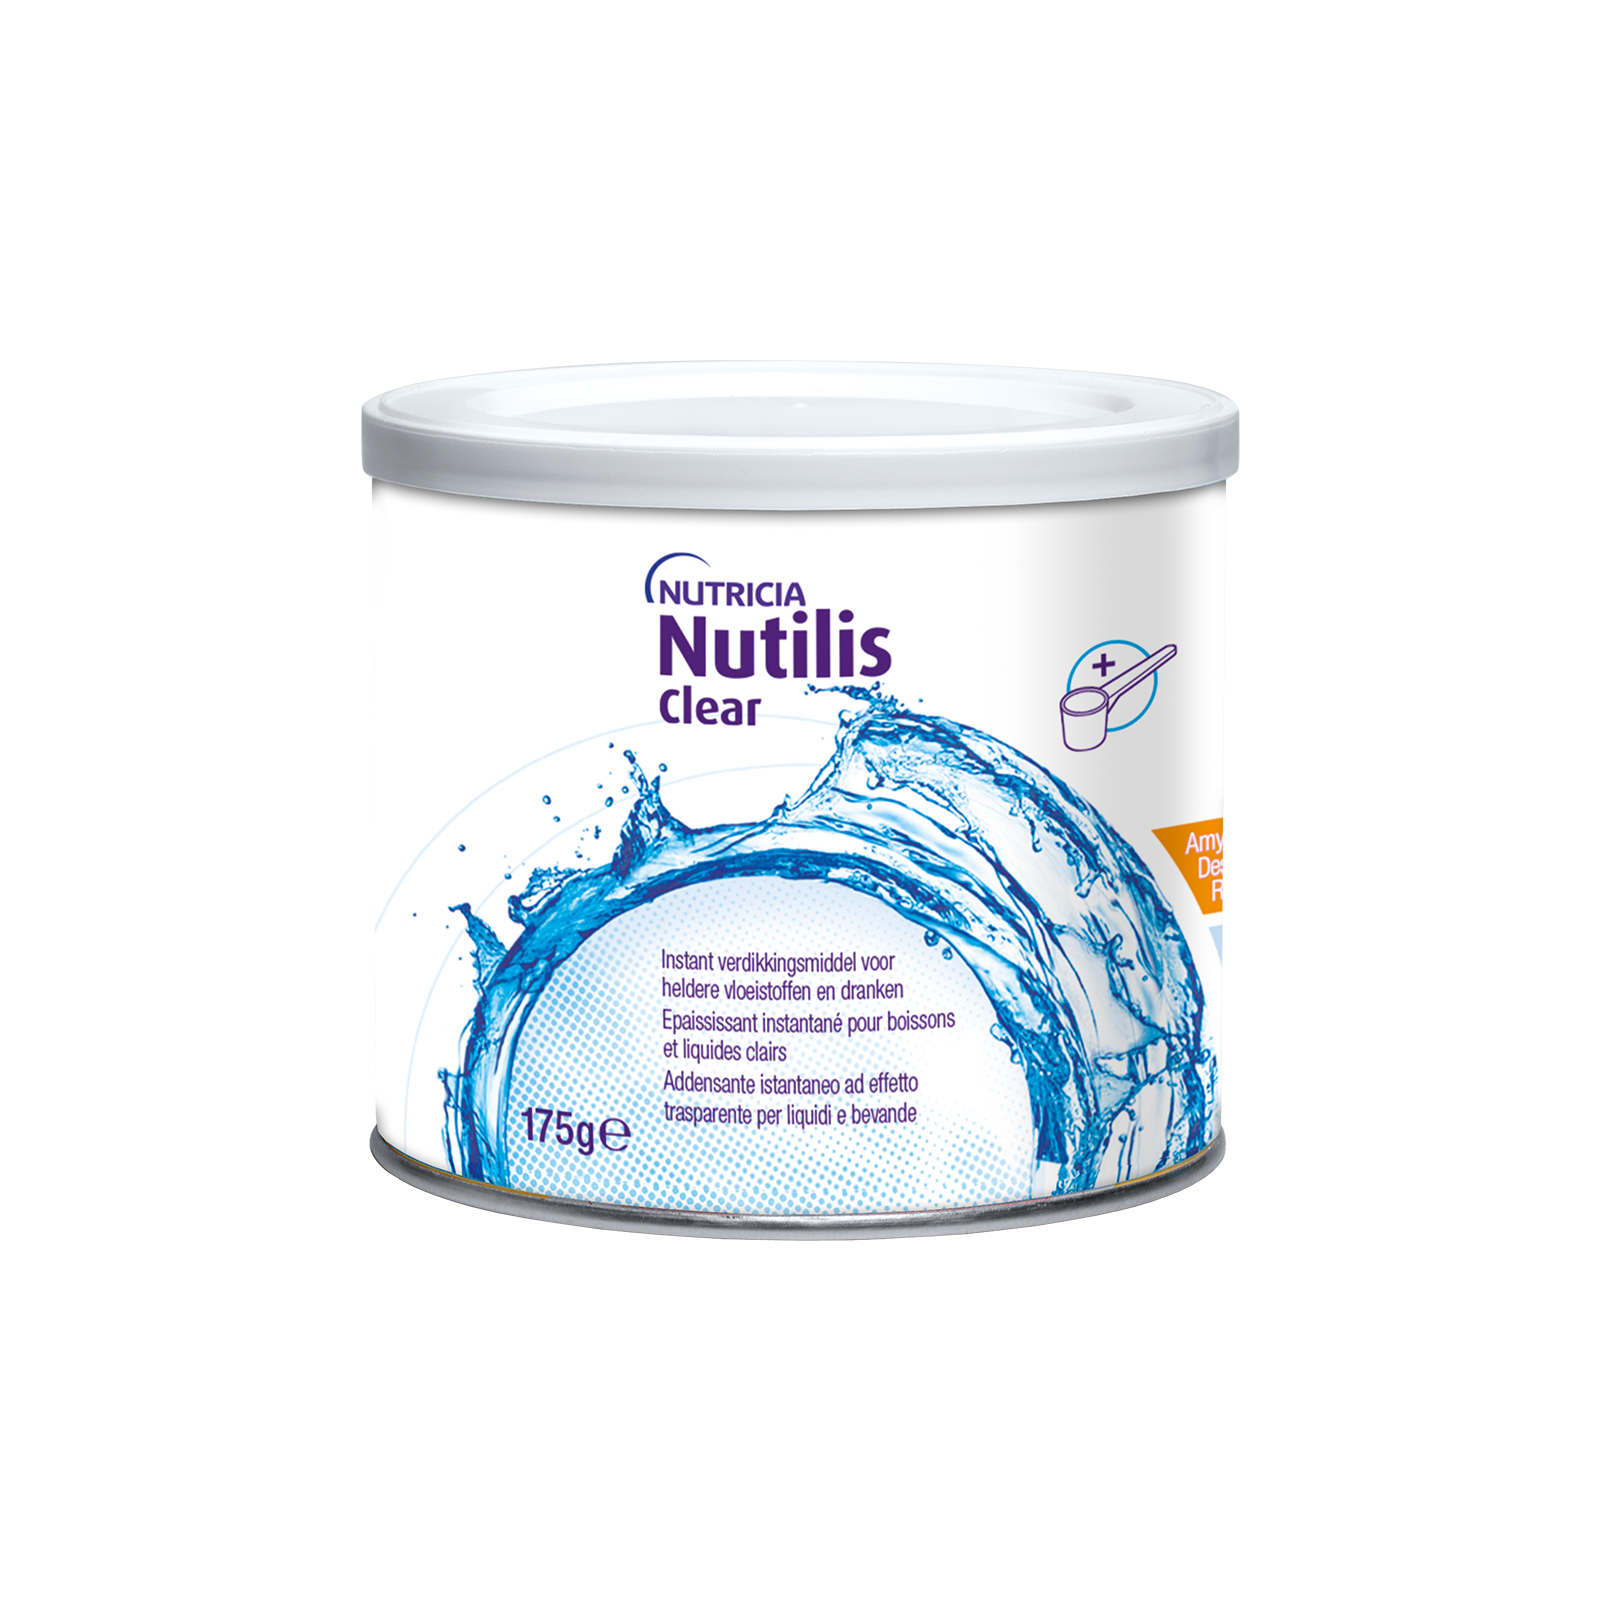 Nutilis Clear 4x Barattolo 175 g | Nutricia